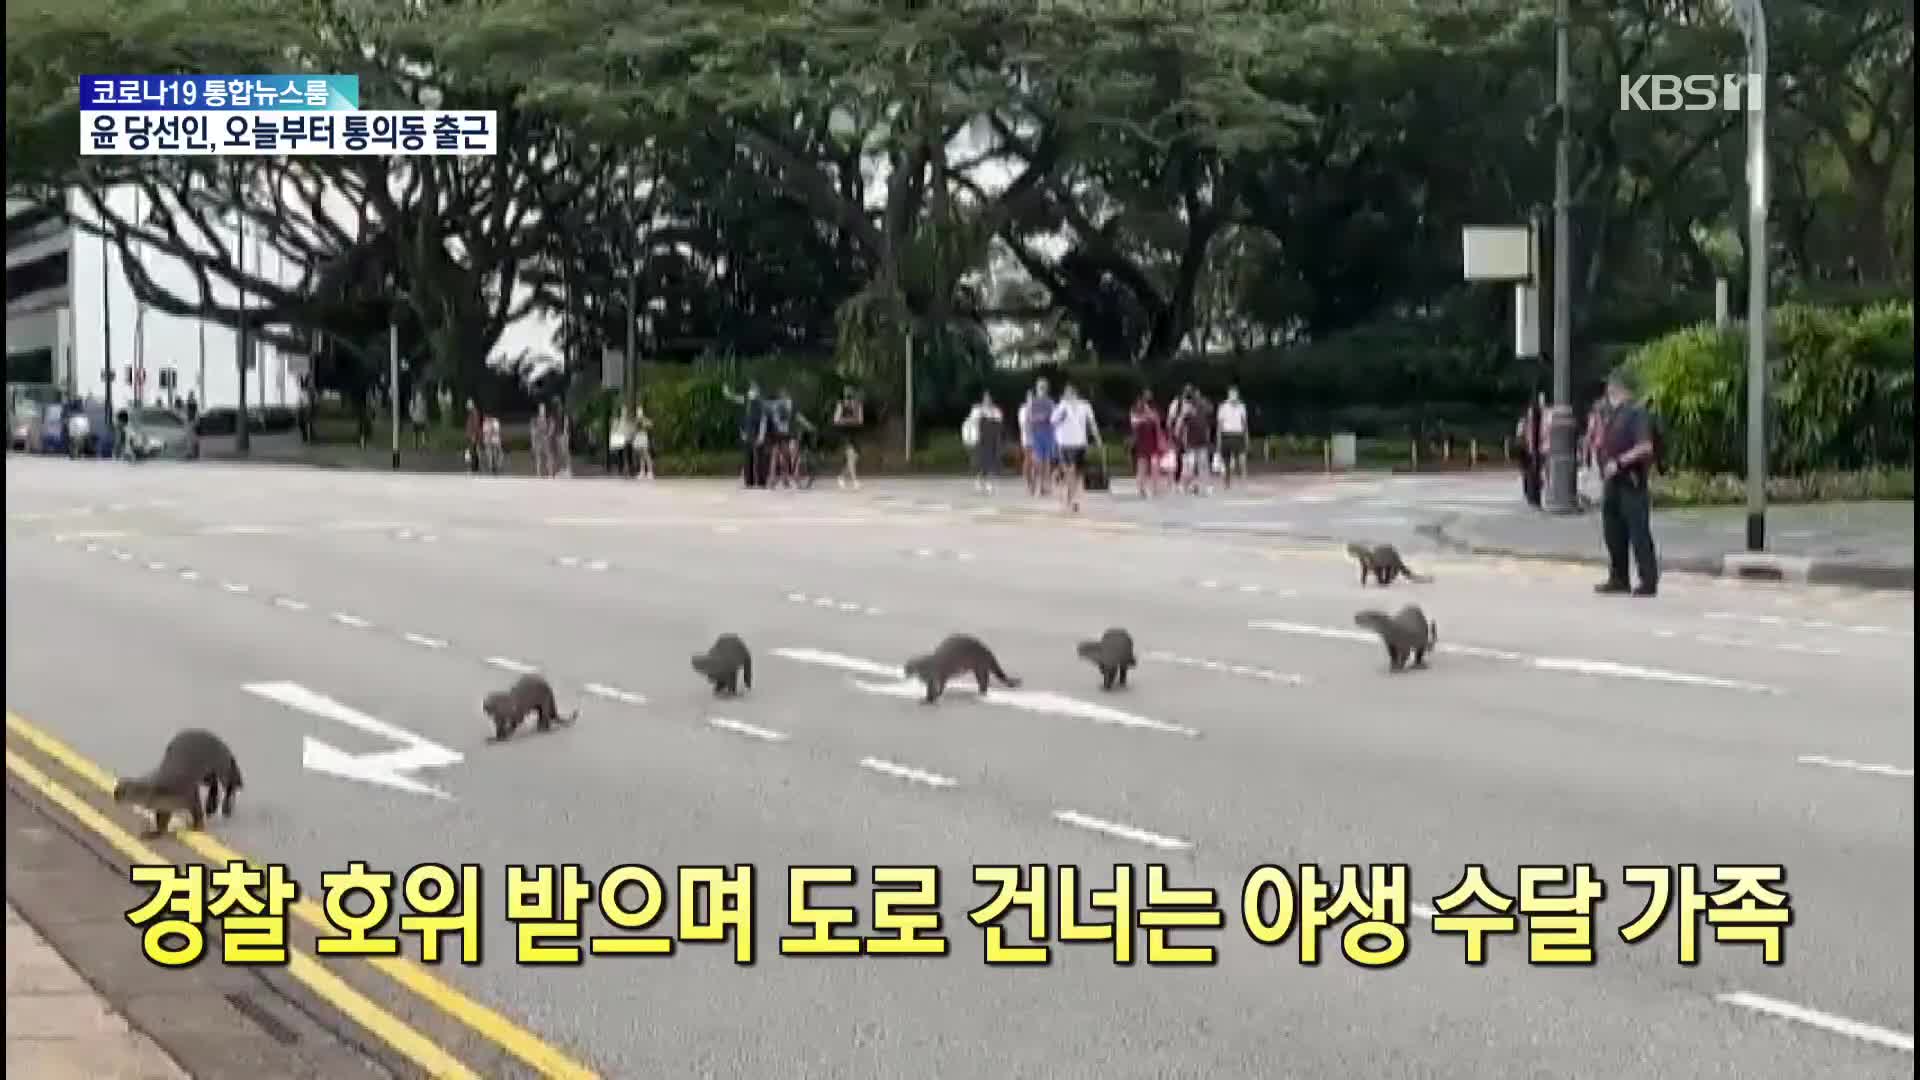 [톡톡 지구촌] 경찰 호위받으며 도로 건너는 야생 수달 가족